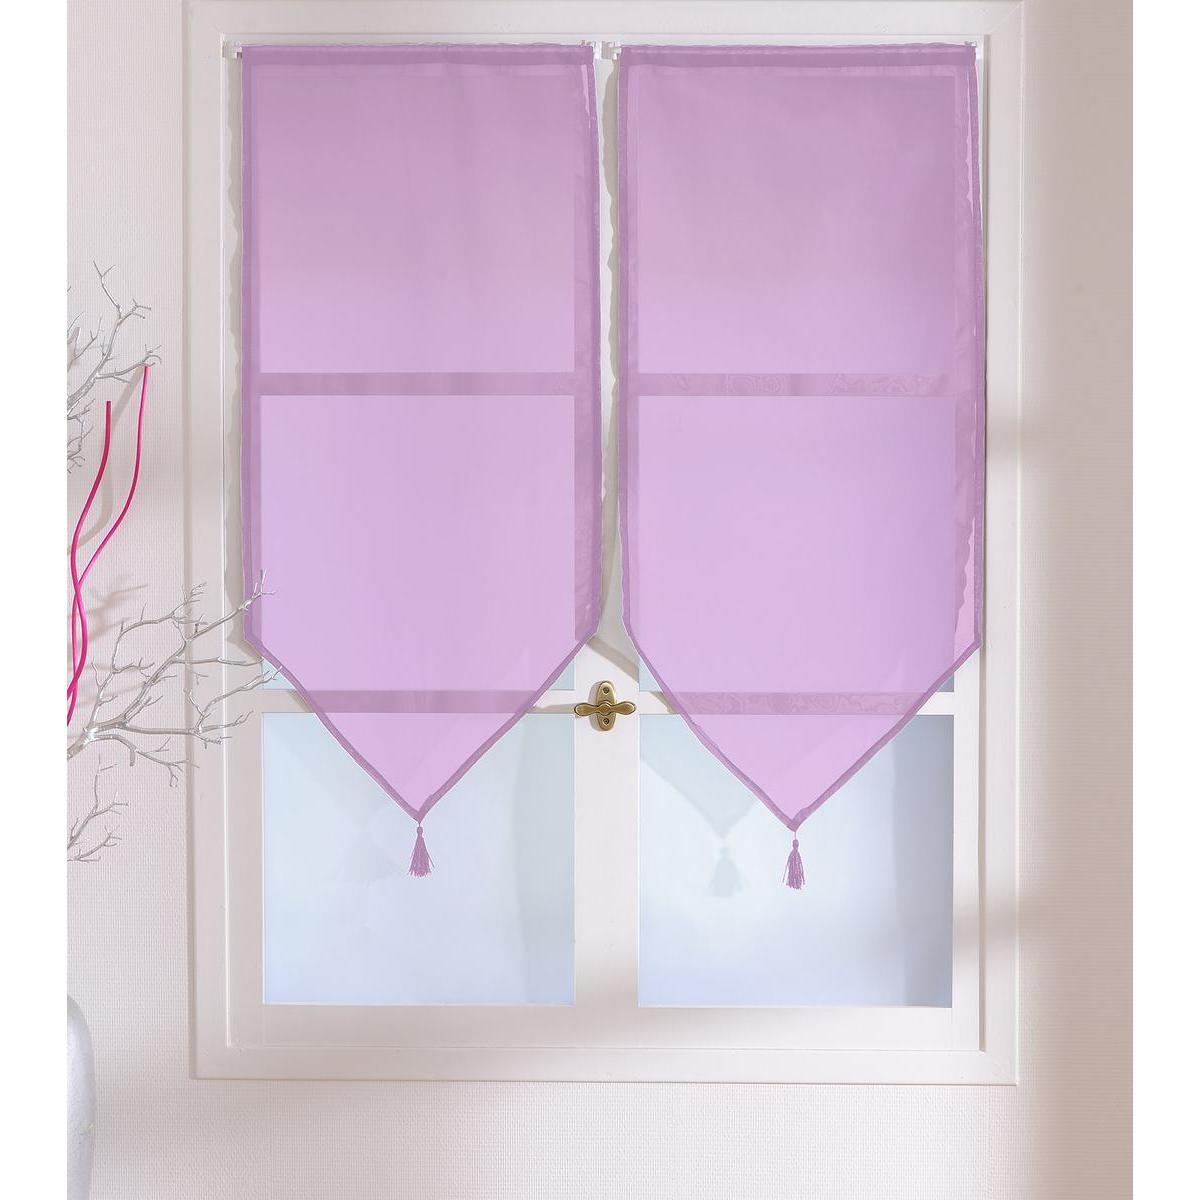 Paire de vitrages - 100% polyester - 60 x 120 cm - Violet